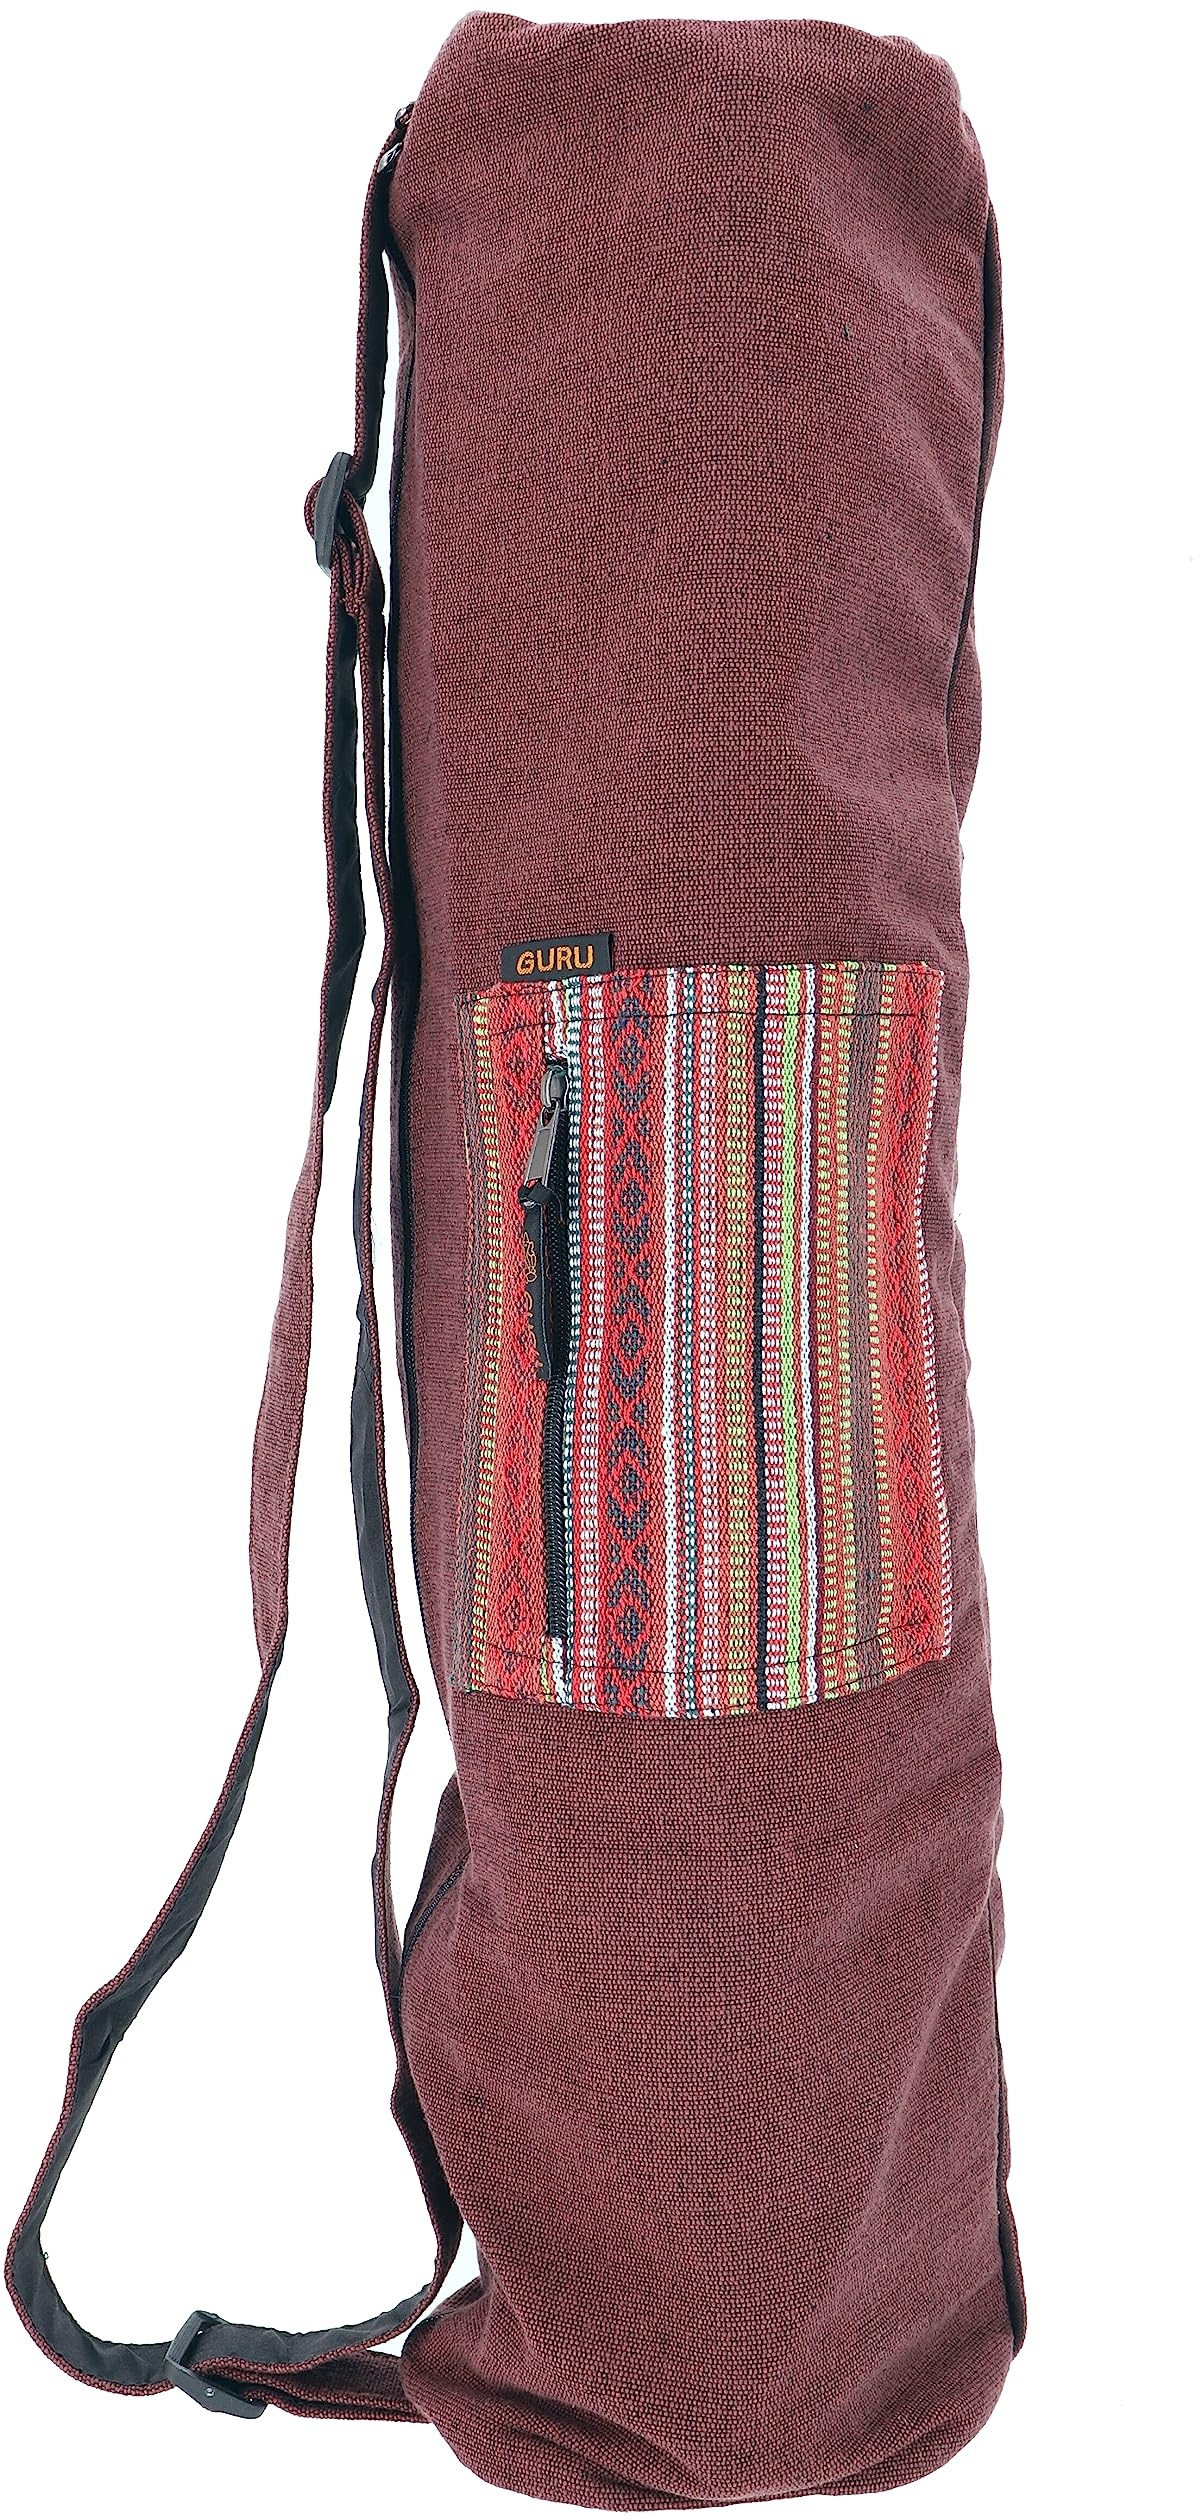 GURU SHOP Boho Yogamatten-Tasche, Yogatasche aus Nepal - Braun, Herren/Damen, Baumwolle, Size:One Size, 70x24x14 cm, Taschen für Yogamatten - Einheitsgröße